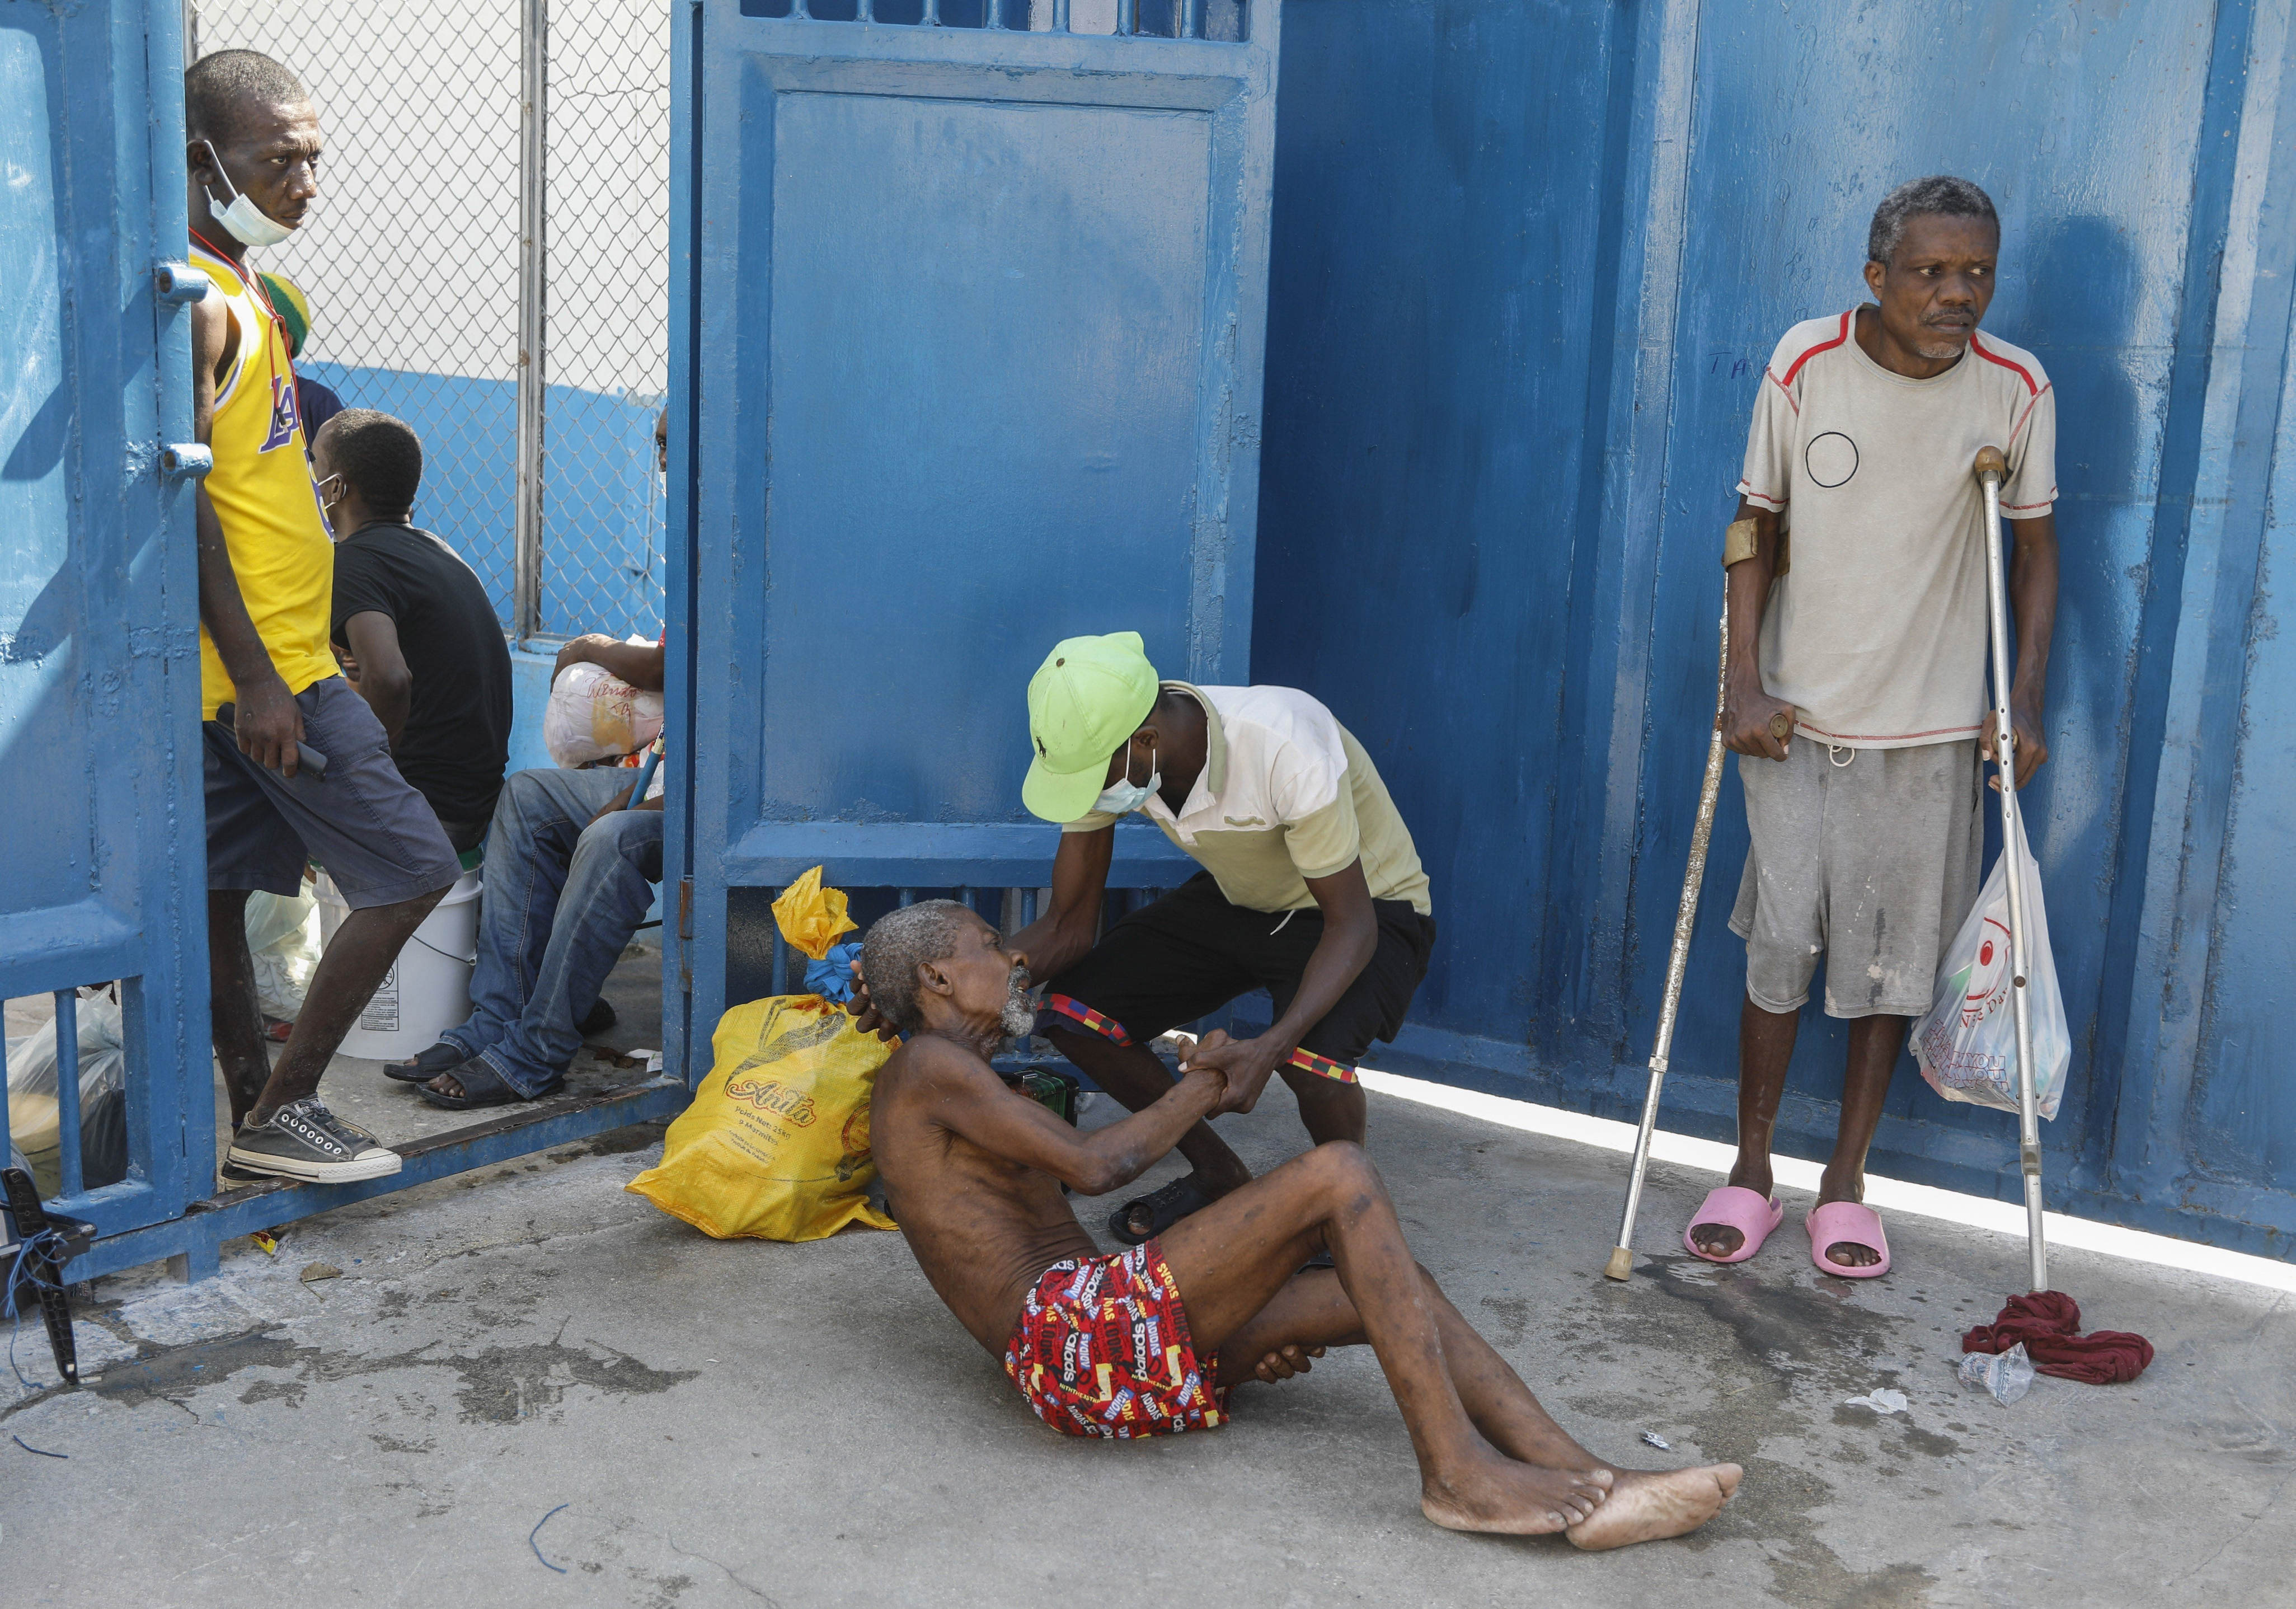 gewalt in haiti: banden greifen gefängnis an, regierung ruft den notstand aus